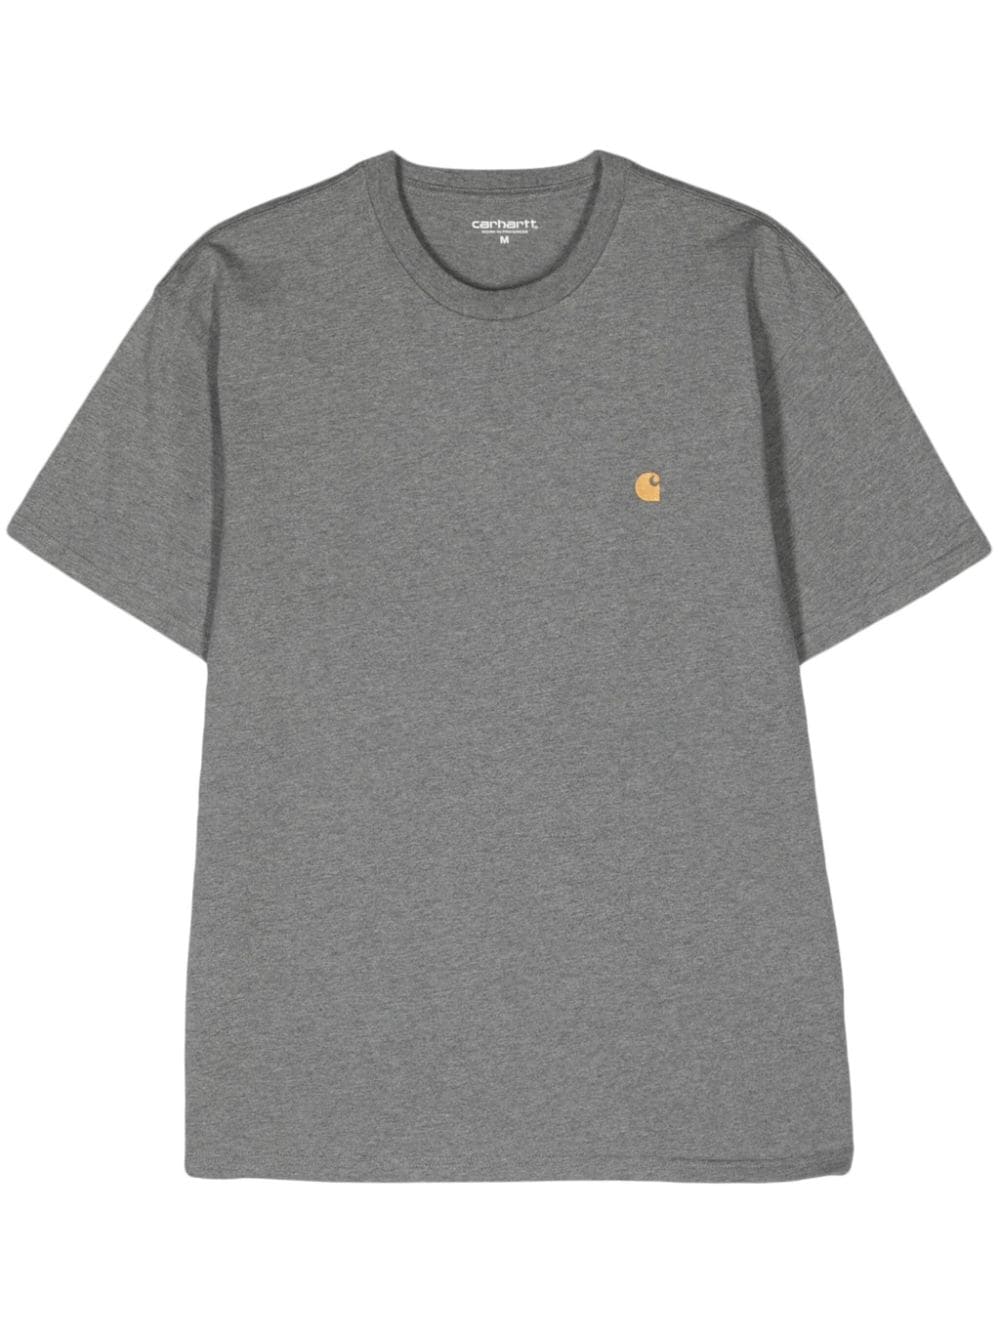 Carhartt WIP S/S Chase cotton T-shirt - Grey von Carhartt WIP